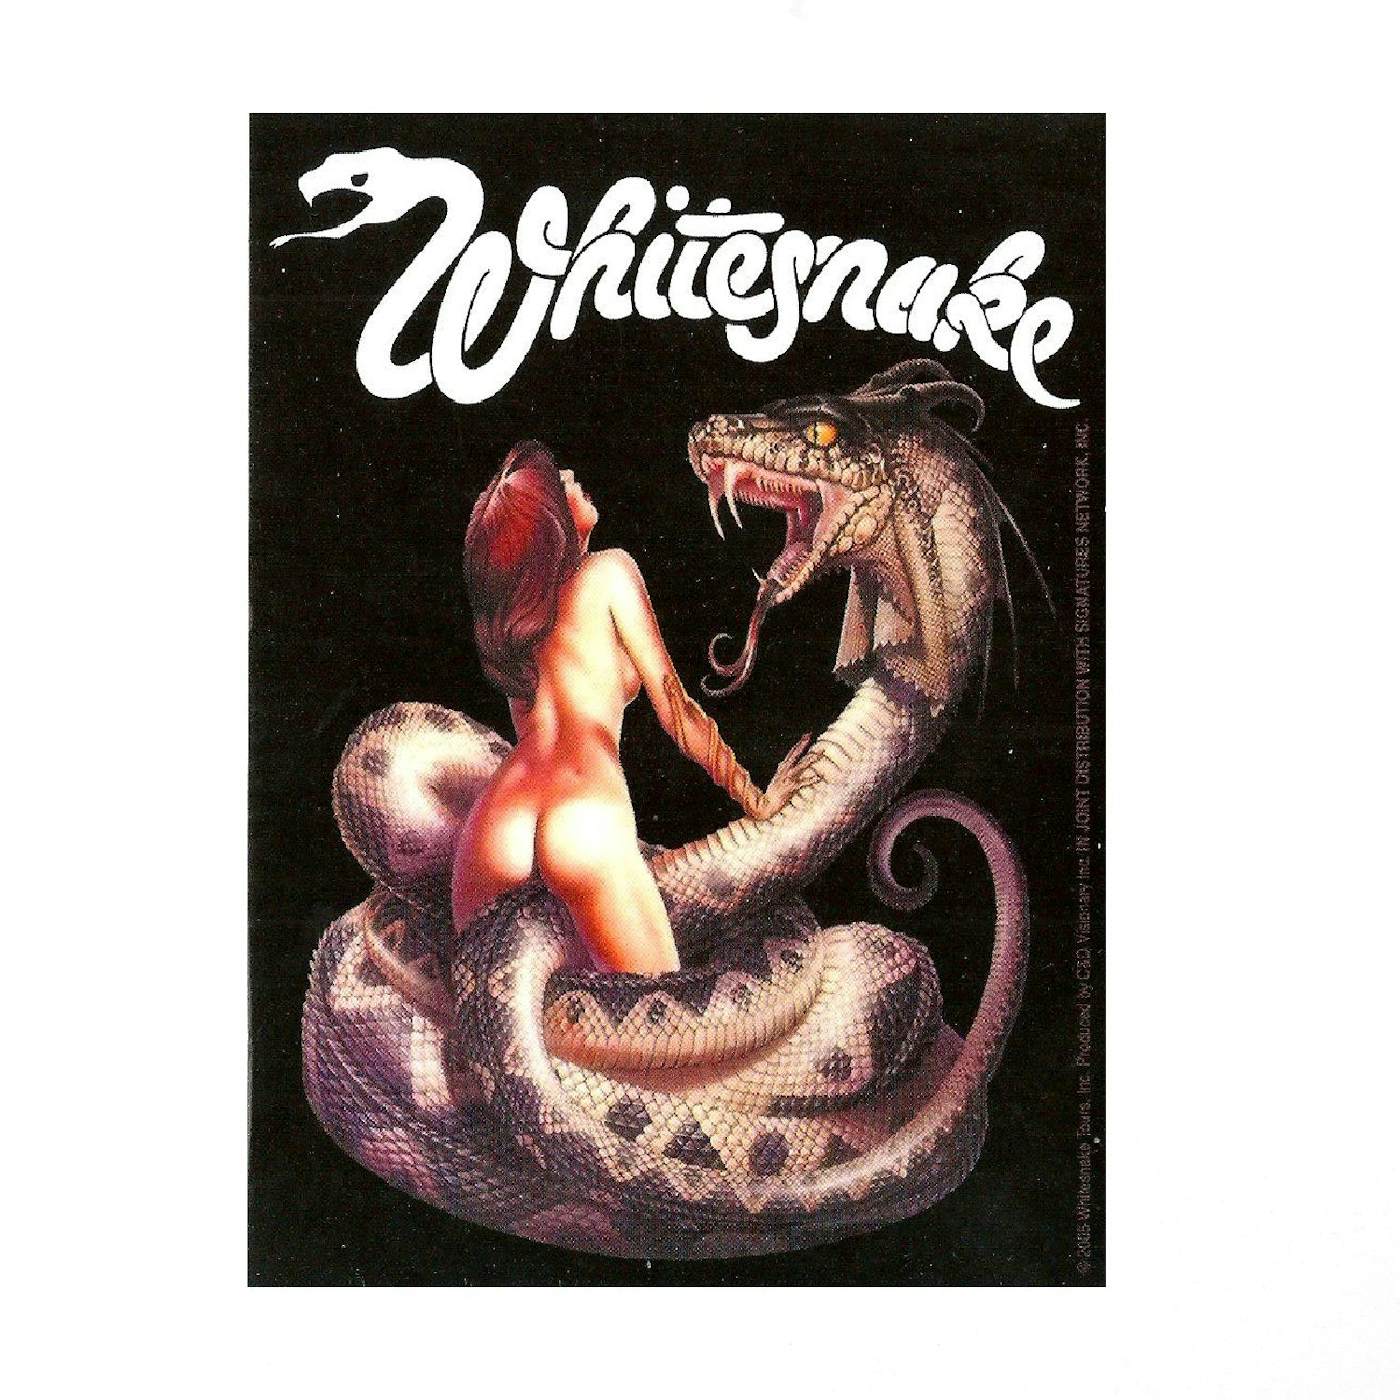 Whitesnake "Lovehunter"